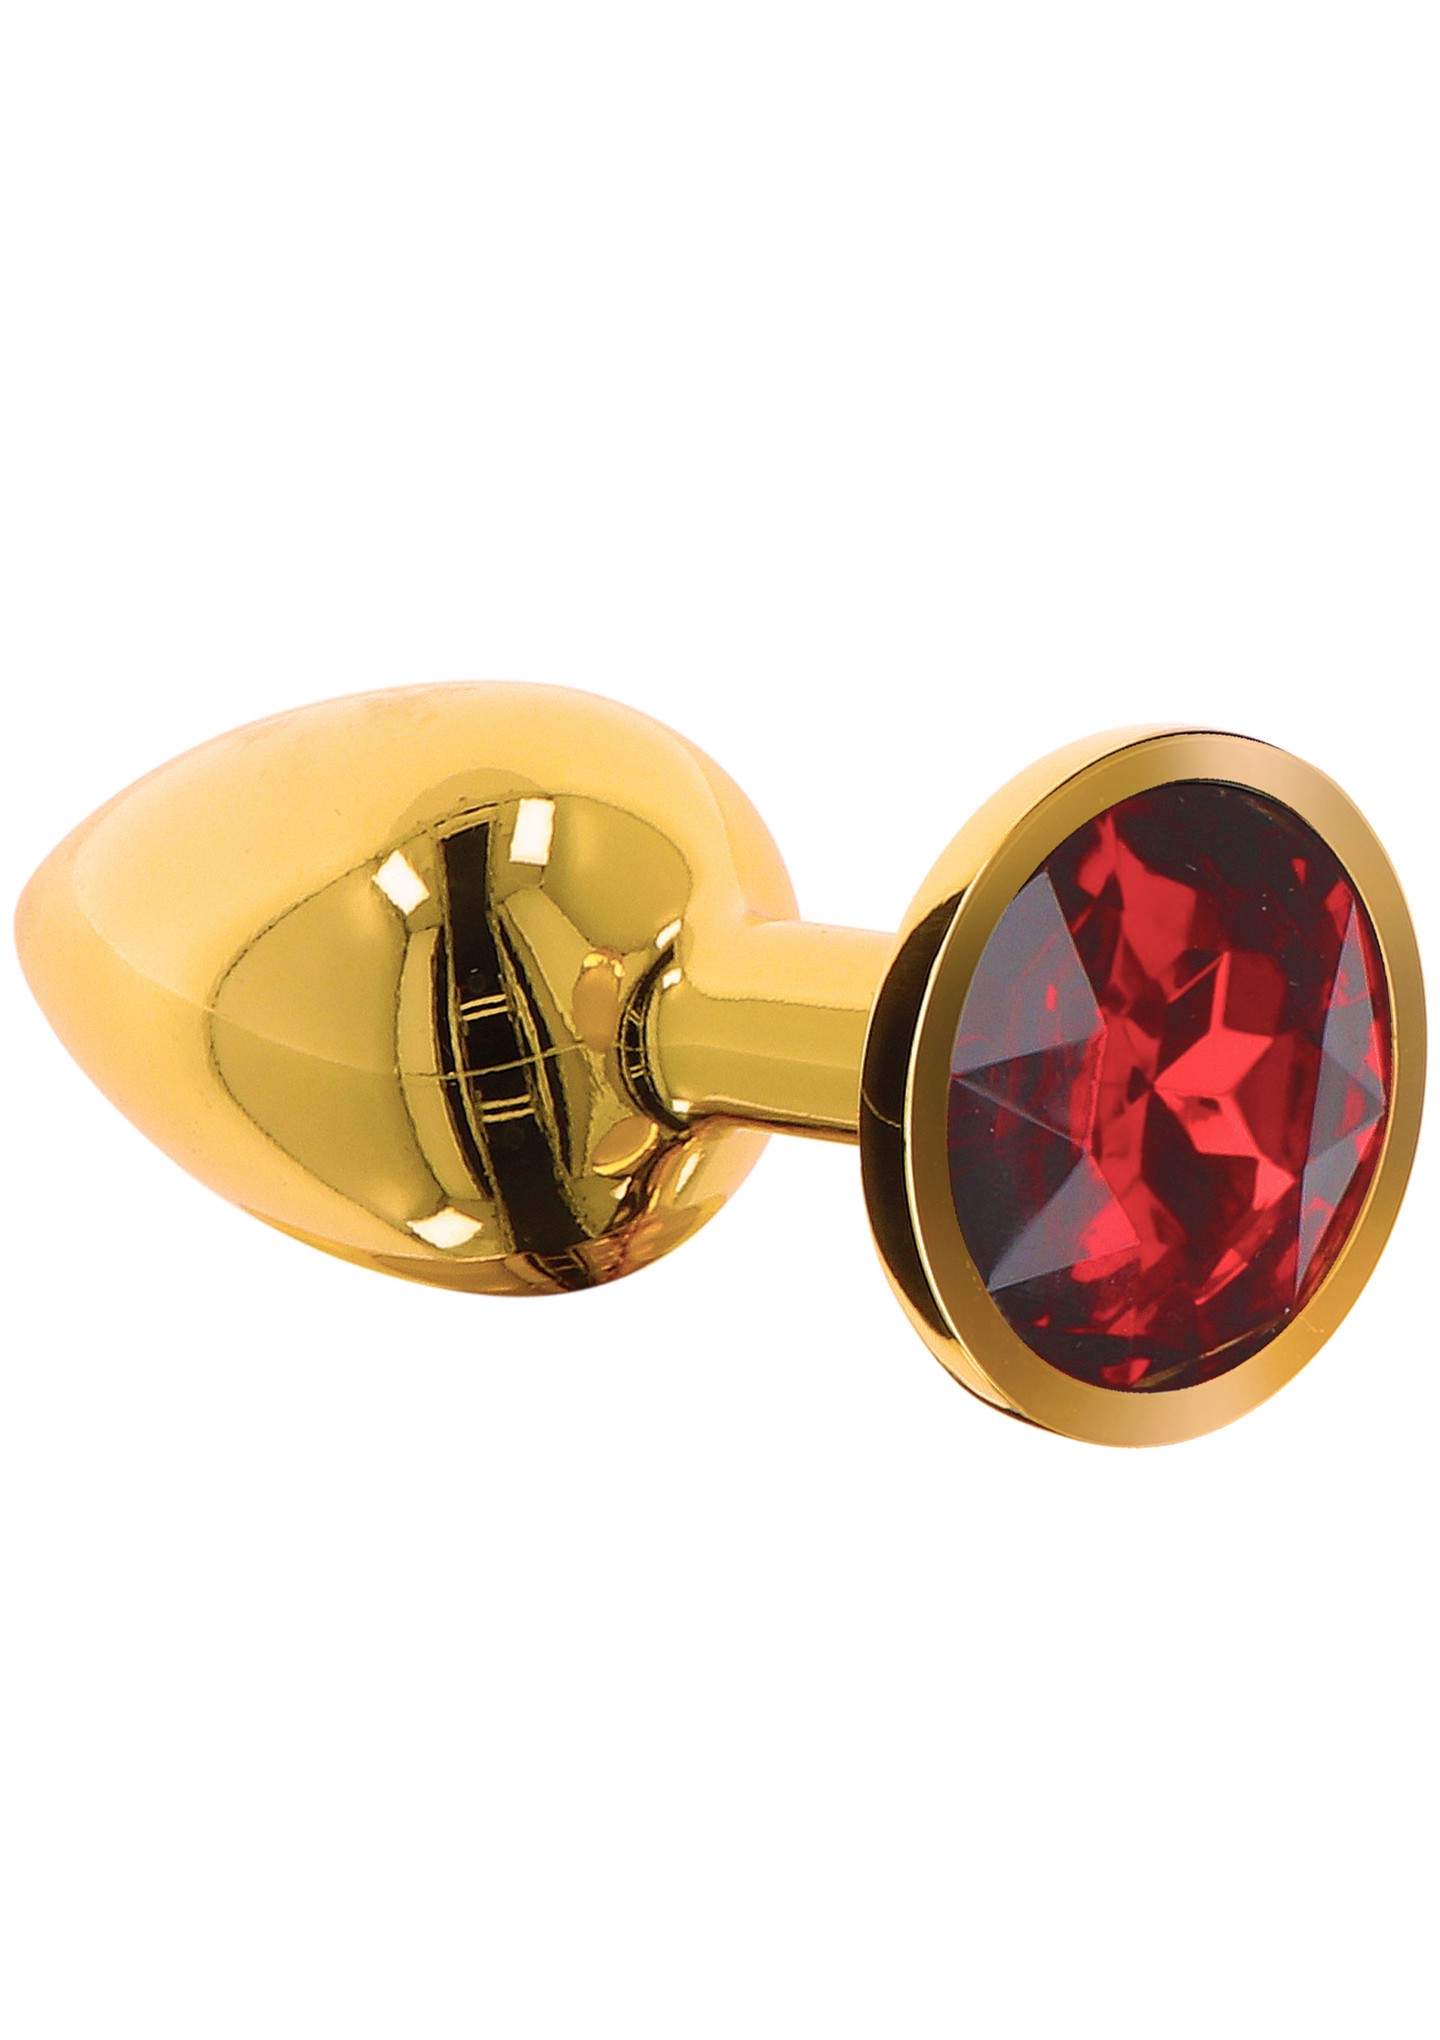 Elegancki złoty korek z czerwonym kryształkiem- rozmiar L